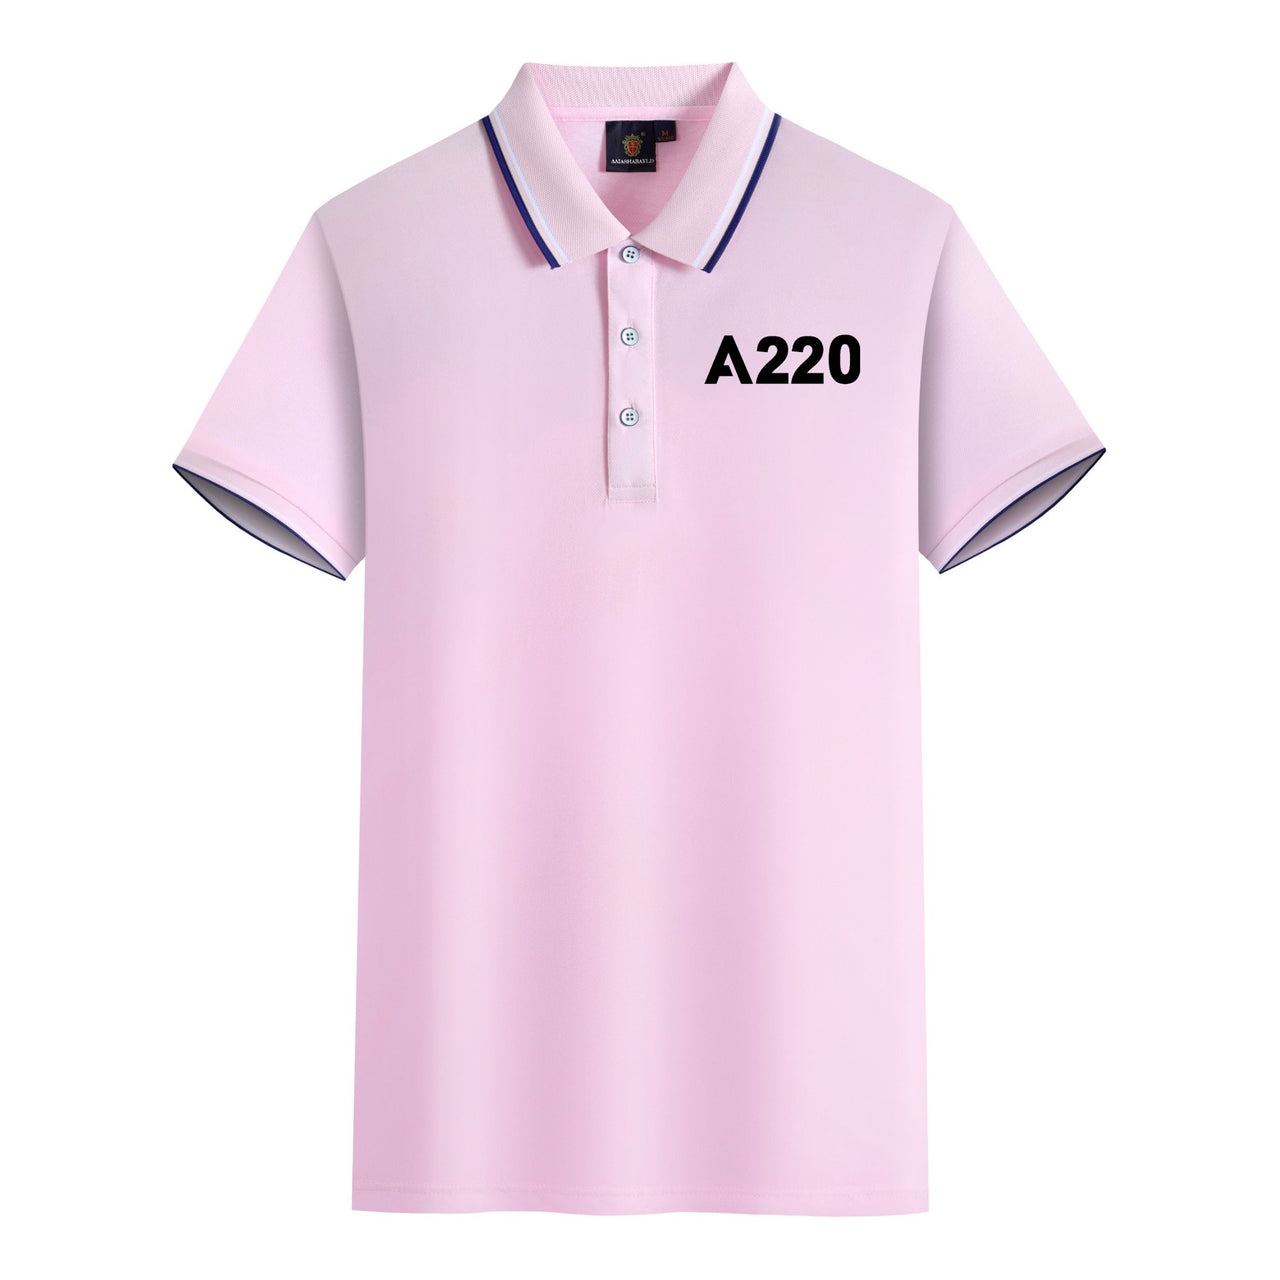 A220 Flat Text Designed Stylish Polo T-Shirts